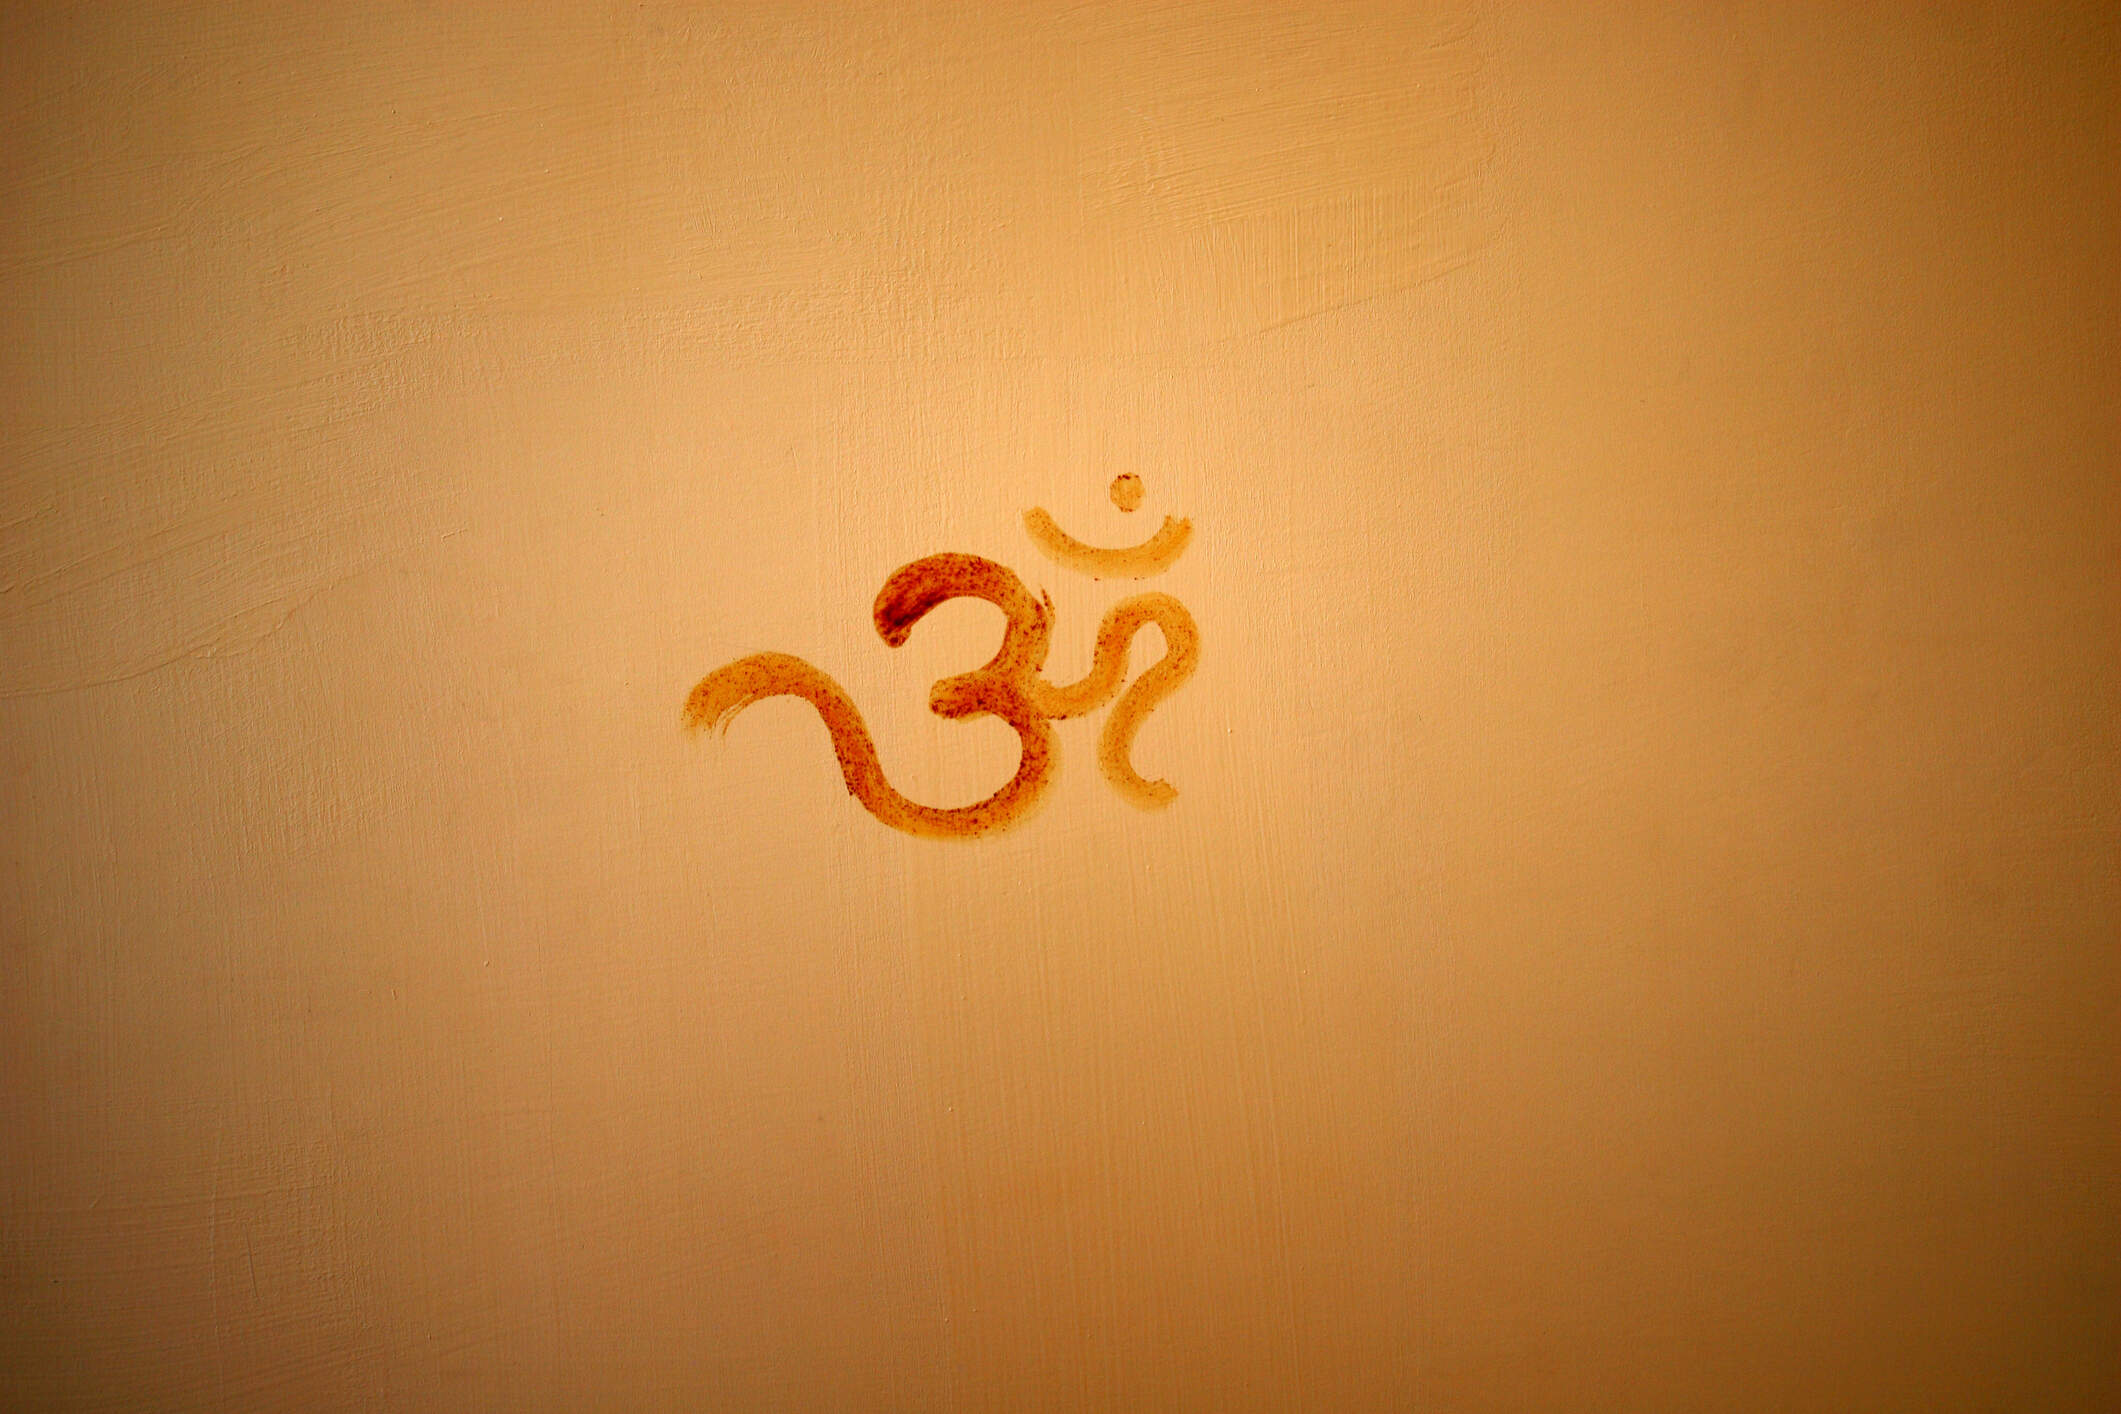 OM (Sanskrit)